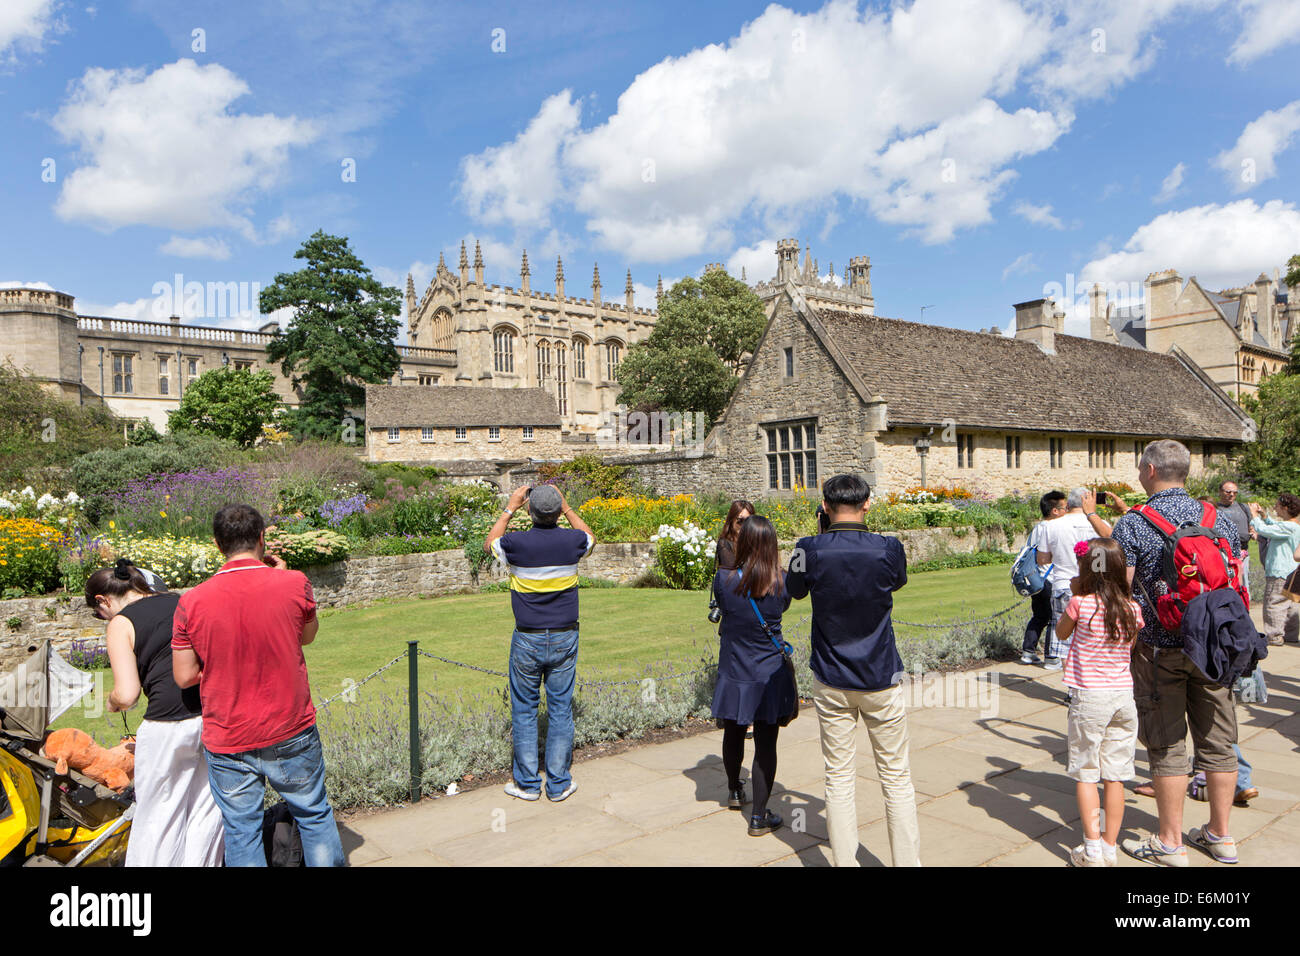 Les touristes photographiant le Christ Church College à Oxford, Oxfordshire, England, UK Banque D'Images